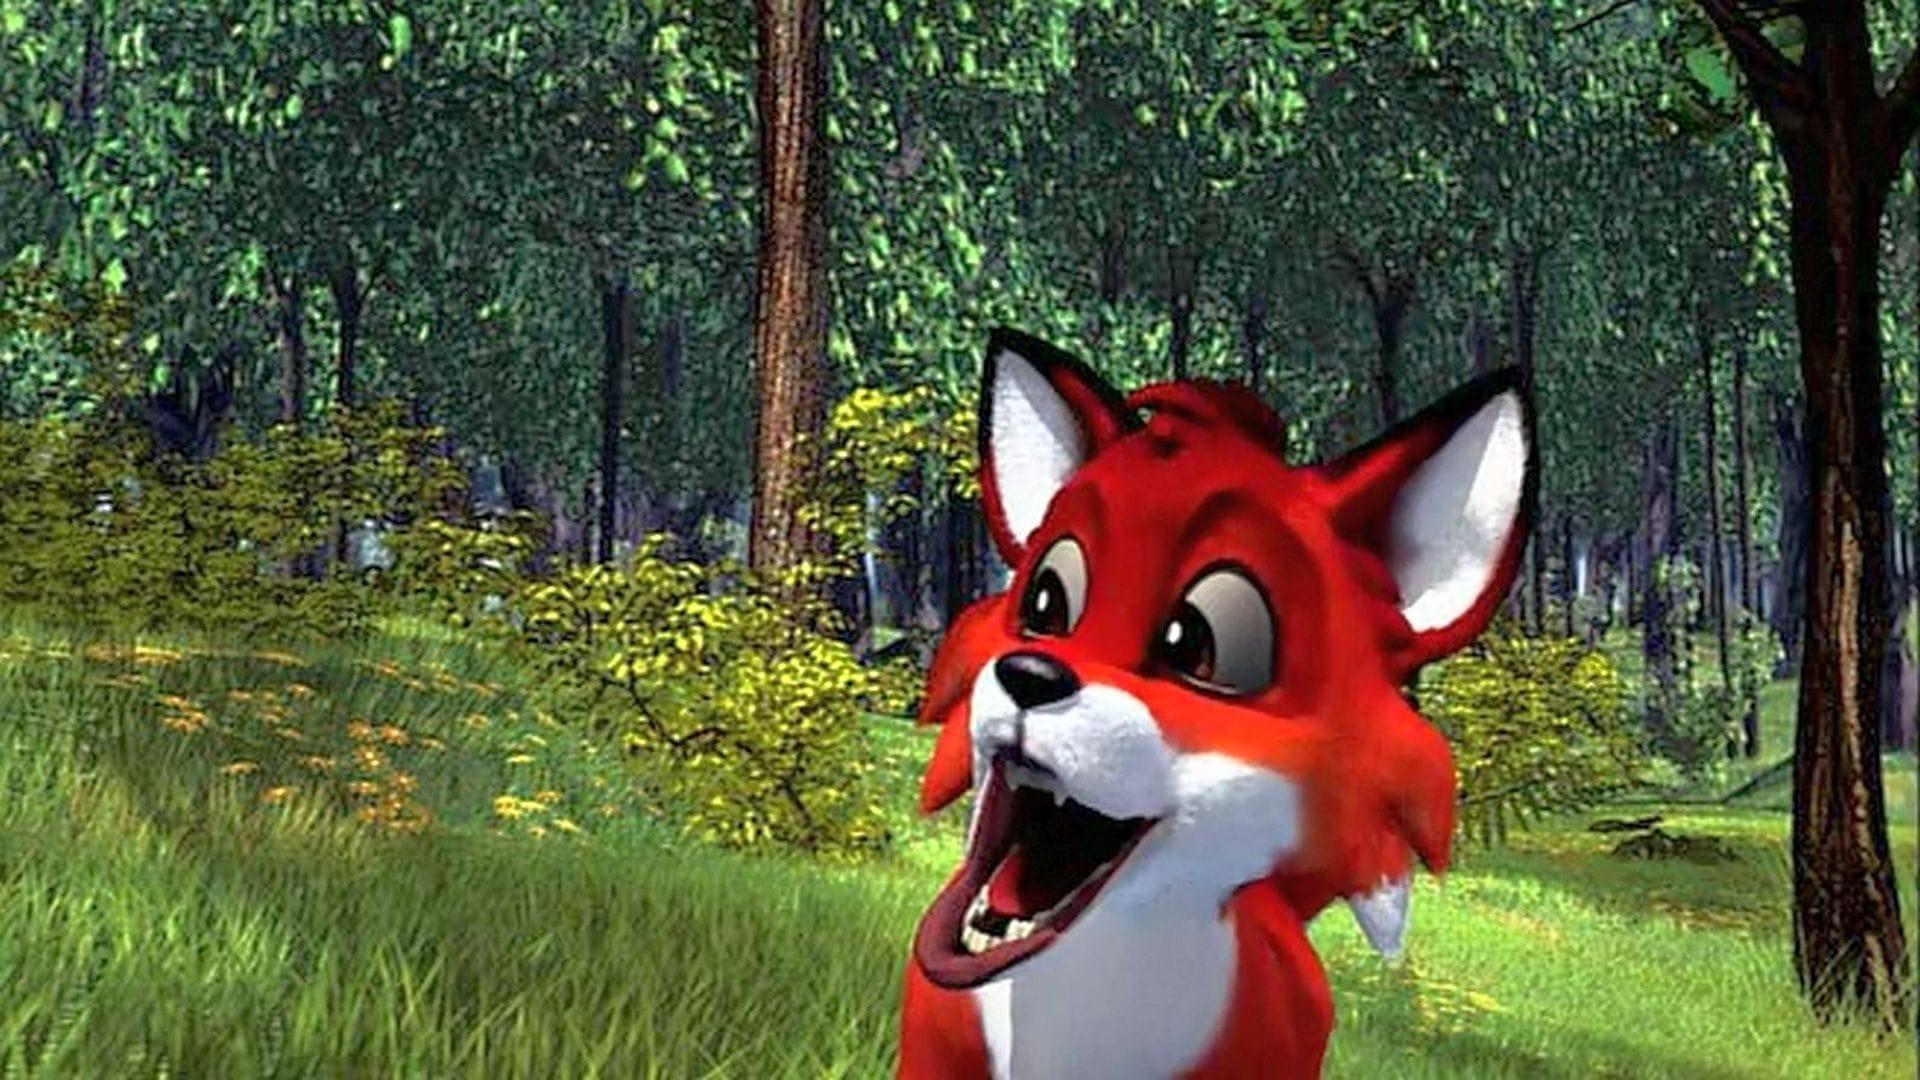 A Fox's Tale backdrop